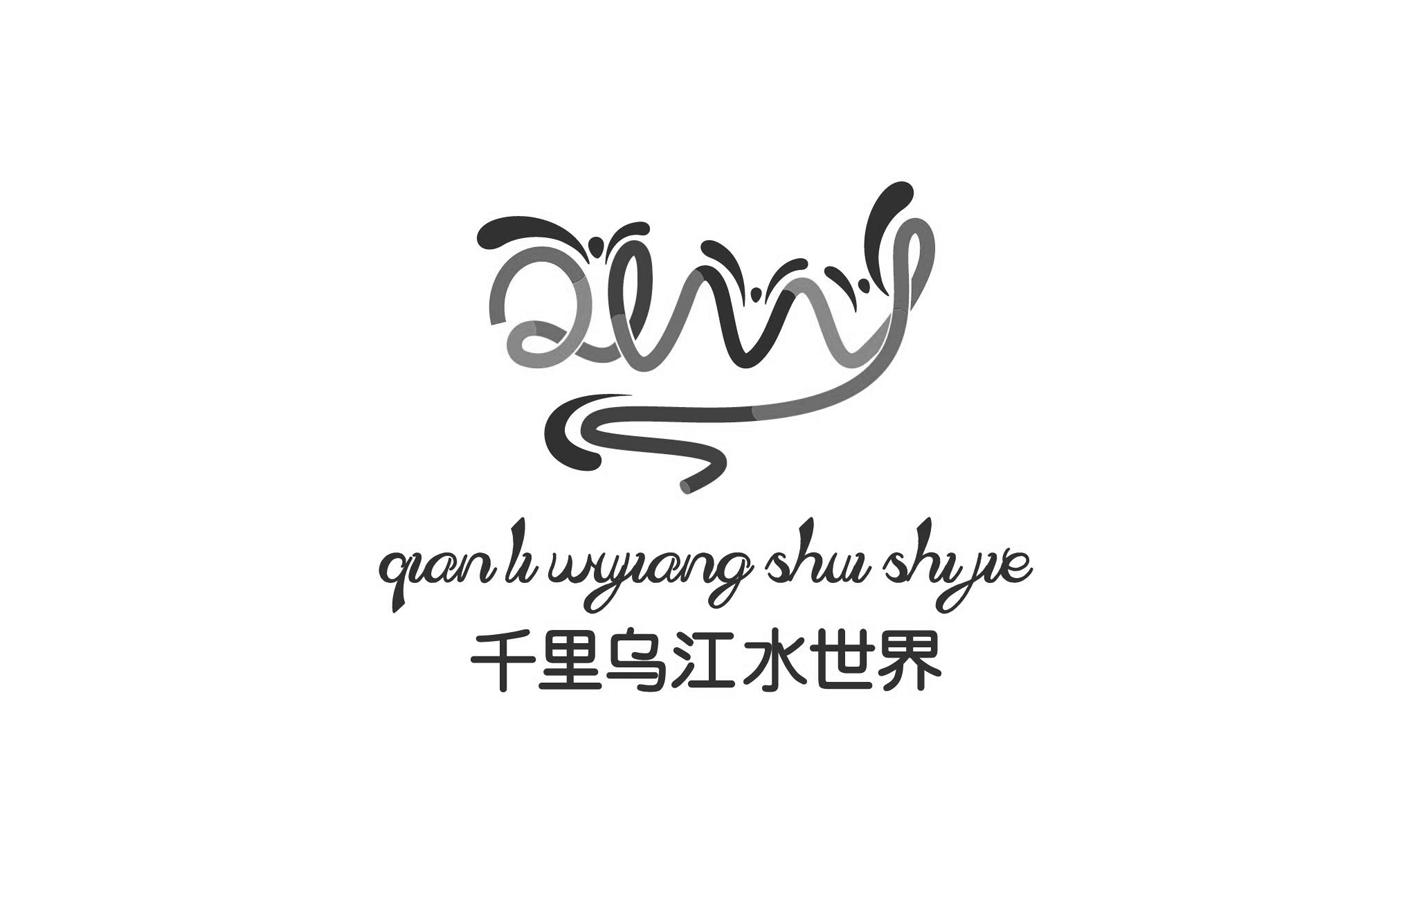 乌江logo图片